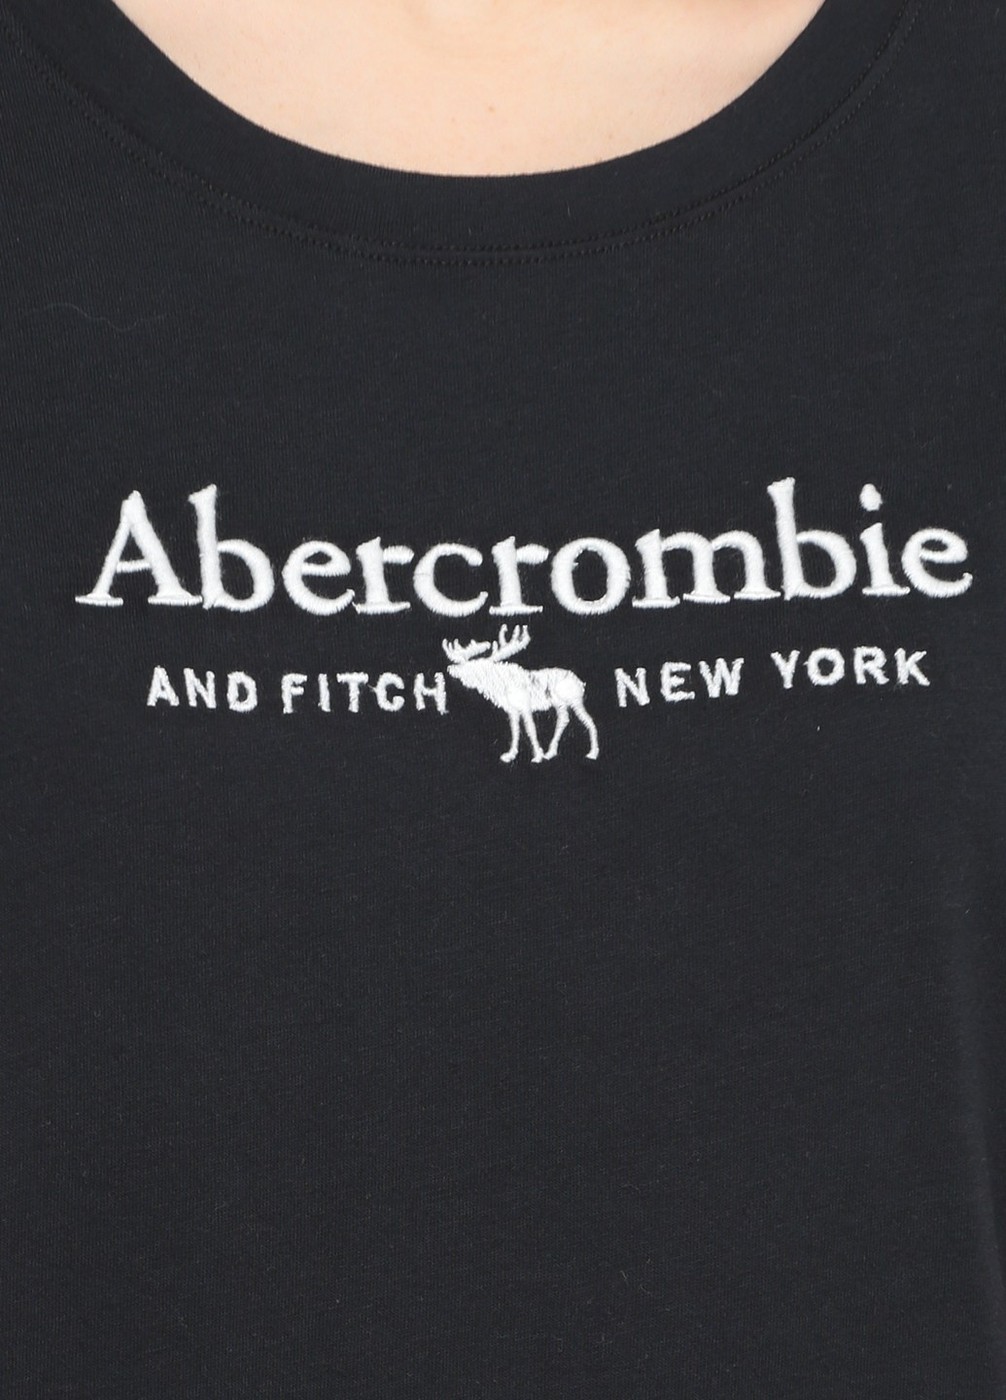 Футболка Abercrombie & Fitch, S, S